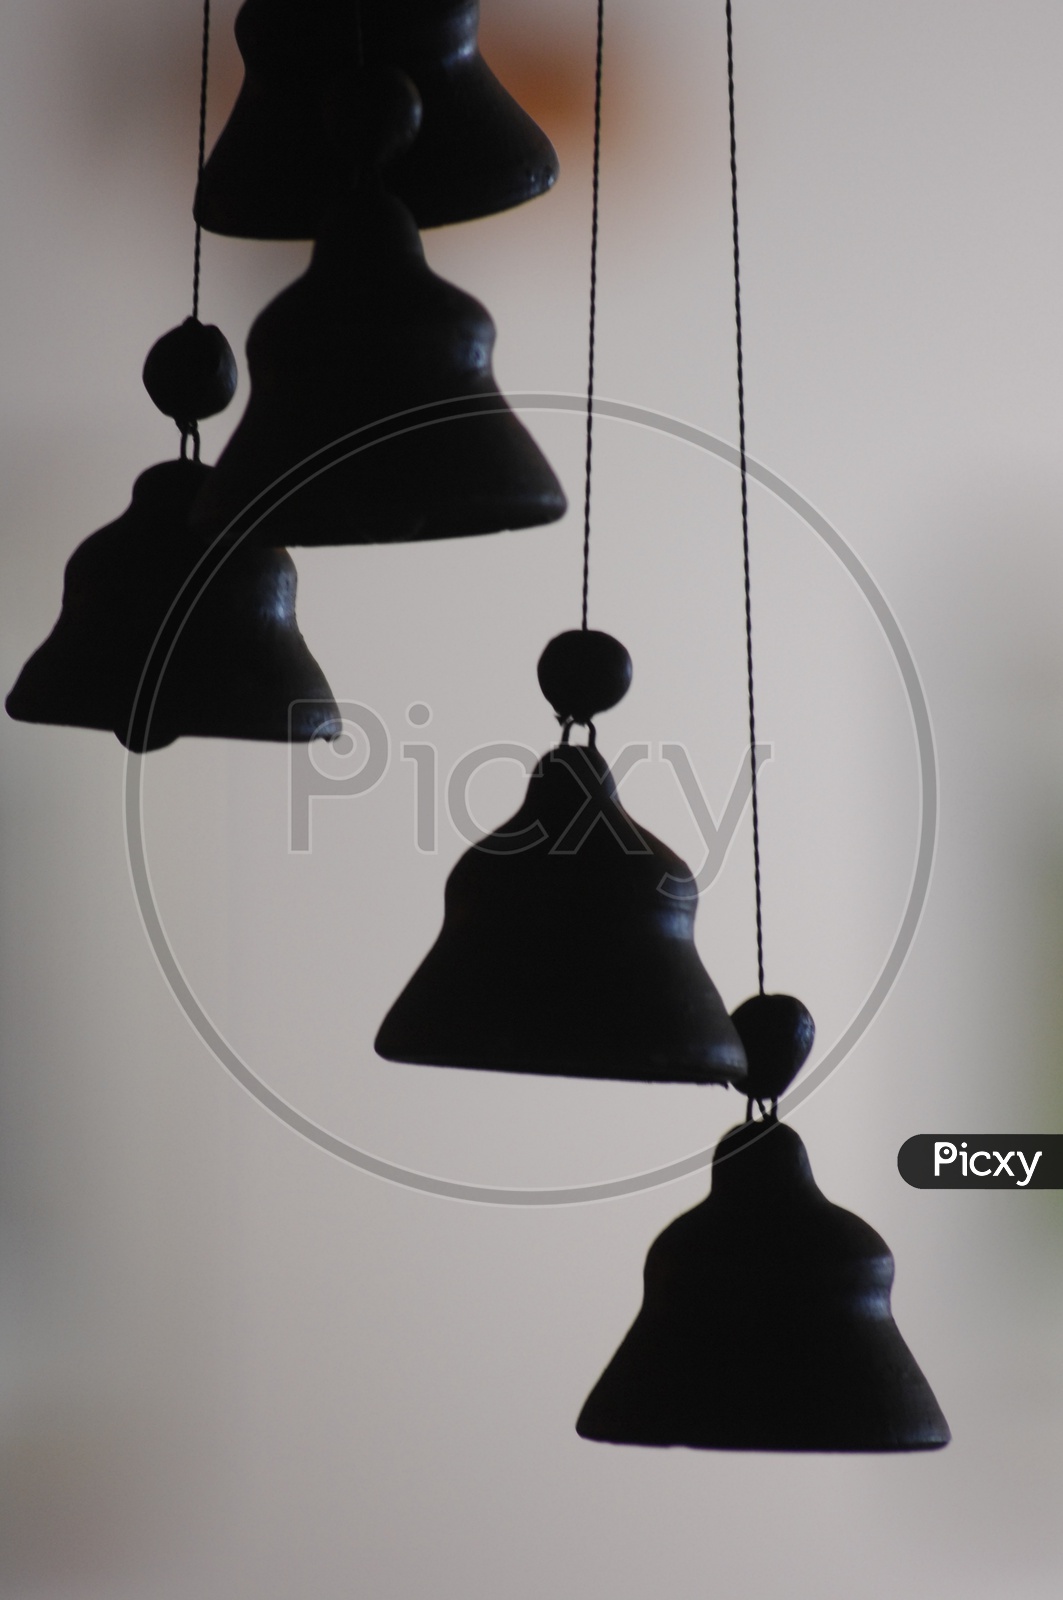 Hanging bells